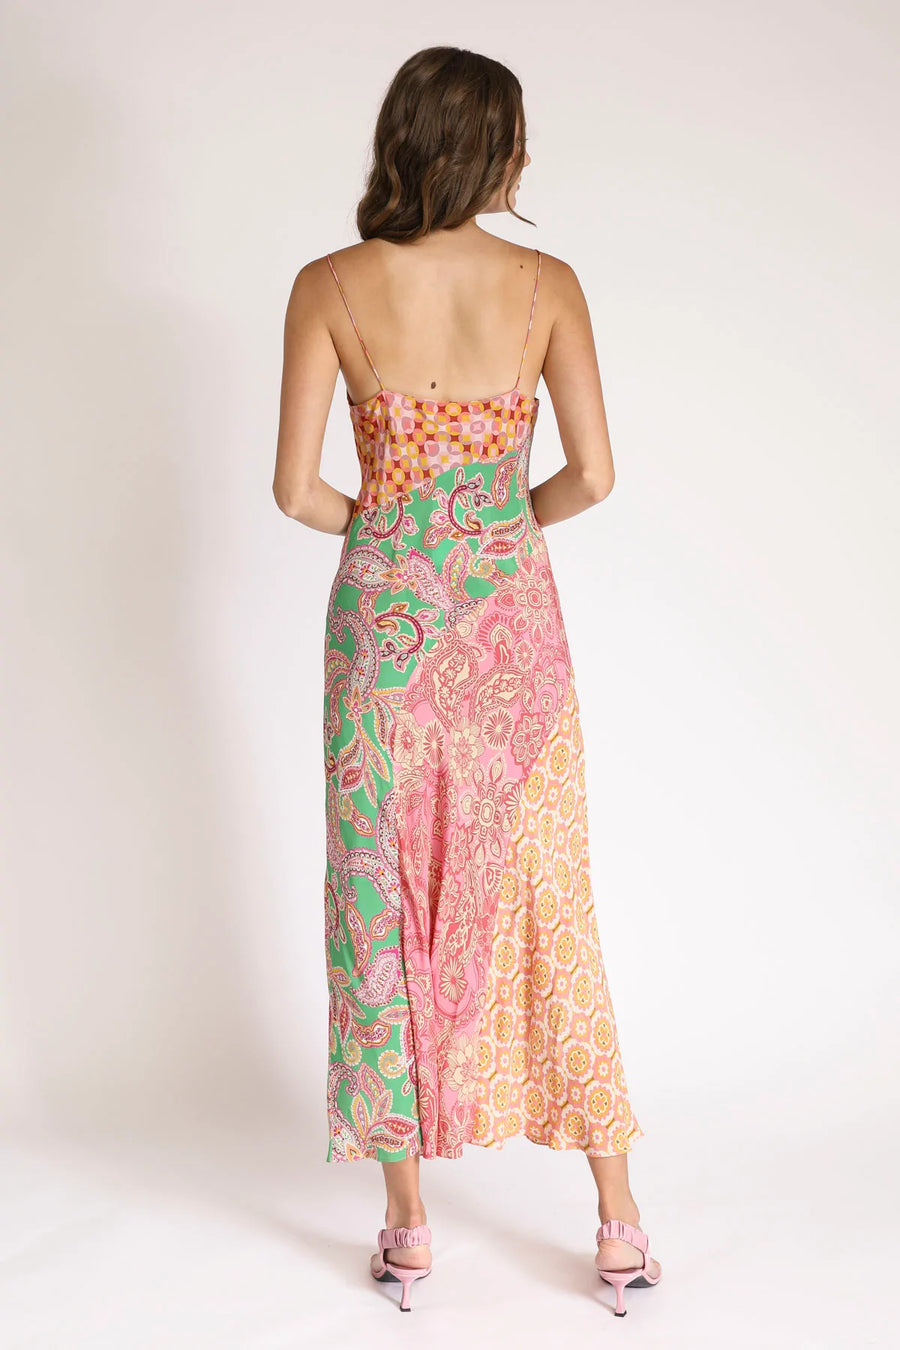 Kachel Stefani Dress - Multi FINAL SALE